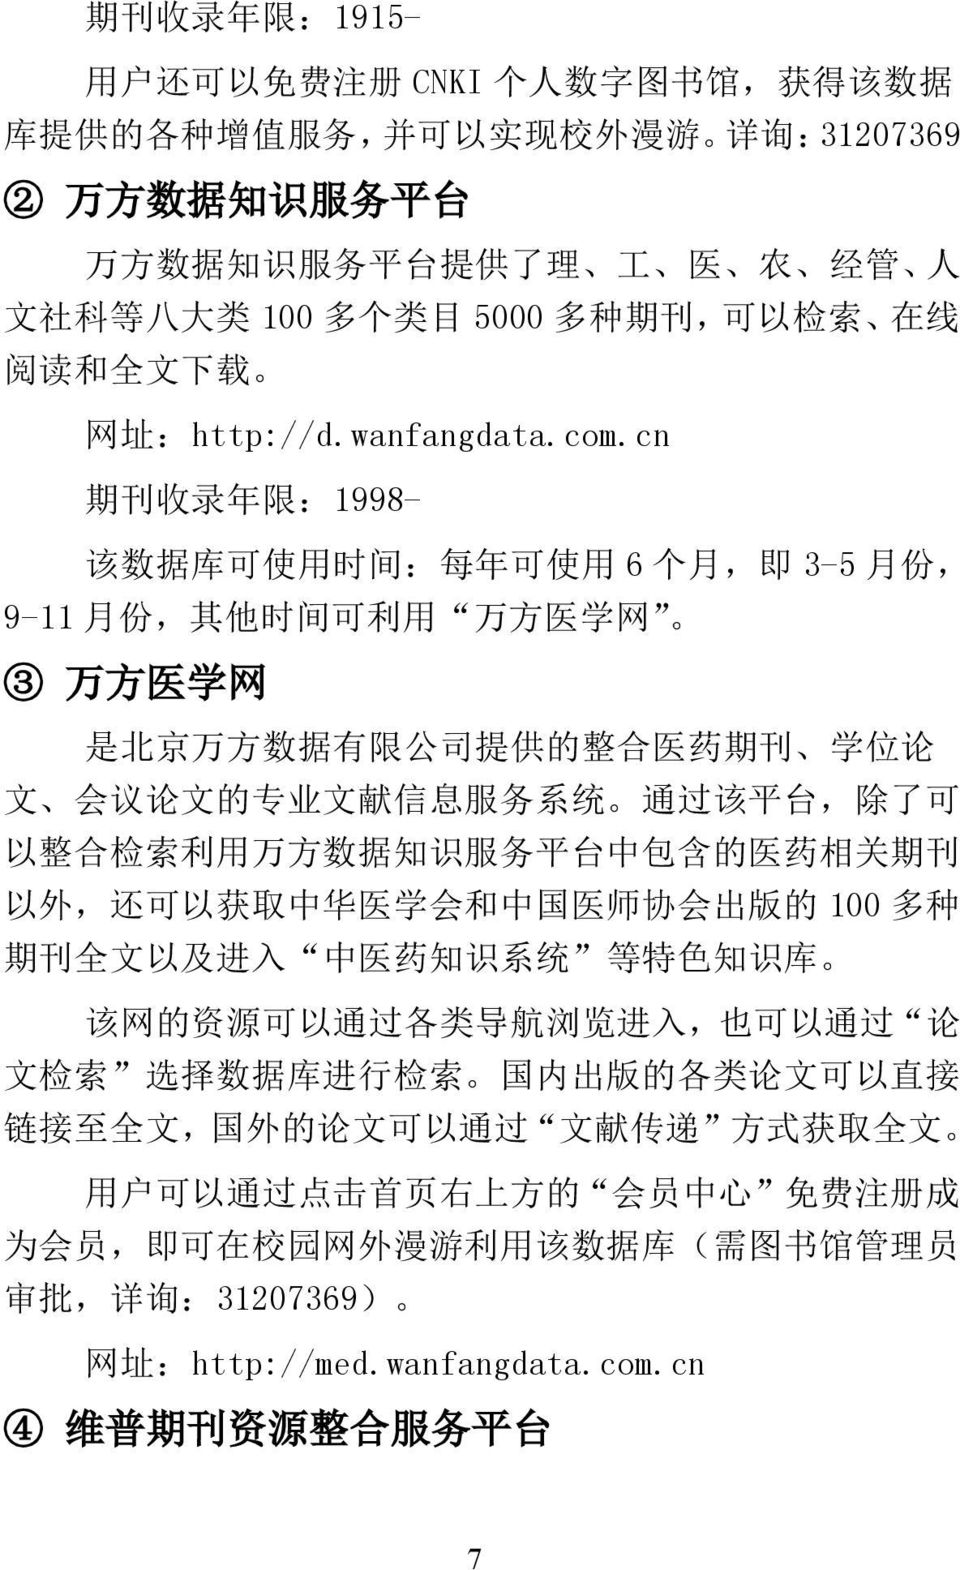 cn 期 刊 收 录 年 限 :1998- 该 数 据 库 可 使 用 时 间 : 每 年 可 使 用 6 个 月, 即 3-5 月 份, 9-11 月 份, 其 他 时 间 可 利 用 万 方 医 学 网 3 万 方 医 学 网 是 北 京 万 方 数 据 有 限 公 司 提 供 的 整 合 医 药 期 刊 学 位 论 文 会 议 论 文 的 专 业 文 献 信 息 服 务 系 统 通 过 该